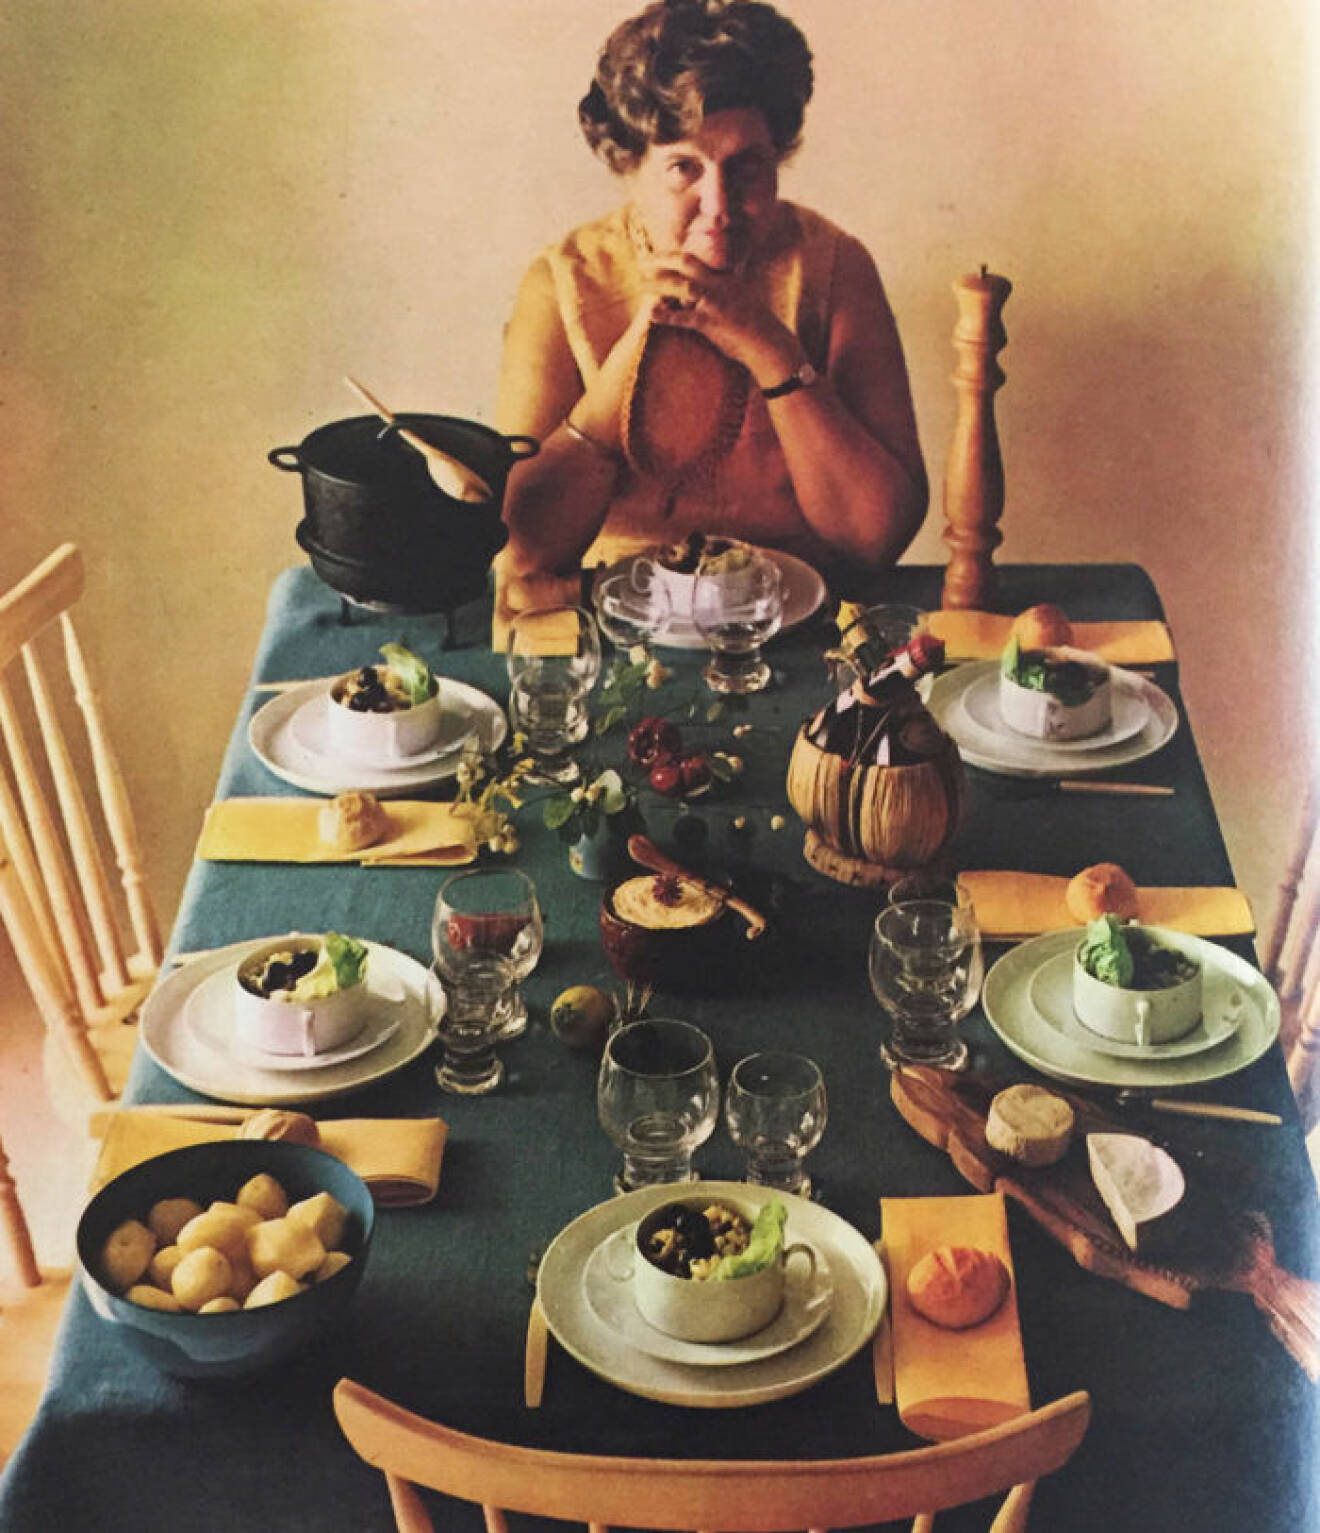 ”En blomma i smöret är en tradition i familjen, det är Rias man, Gustav Sandgren som står för den rara detaljen!” Ria Wägner, journalist och dokumenterat matkunnig.